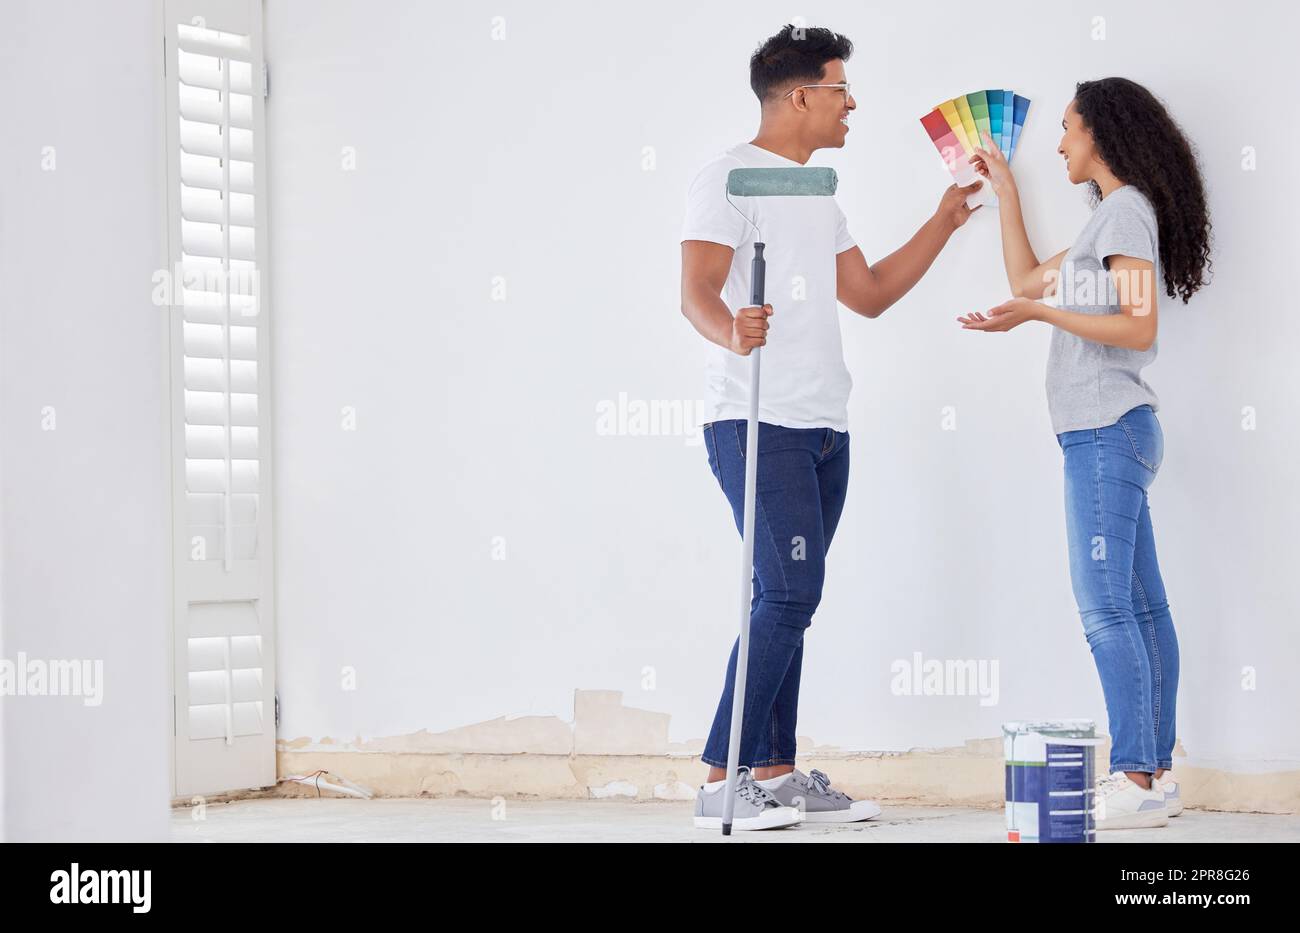 Décider de la couleur est la partie difficile. Photo d'un jeune couple regardant les nuances de couleurs tout en peignant une pièce. Banque D'Images